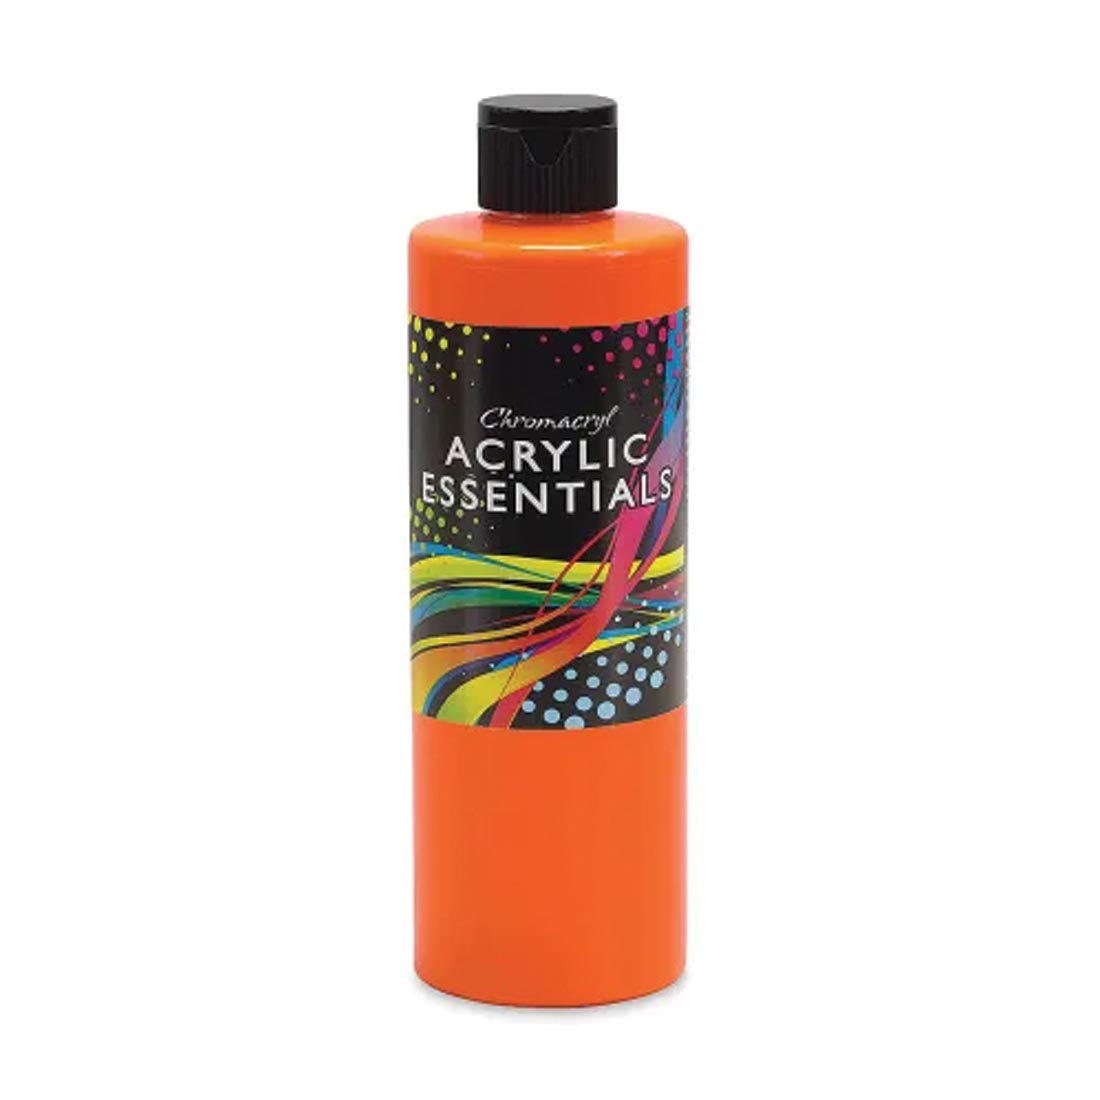 Bottle of Orange Chromacryl Acrylic Essentials Paint